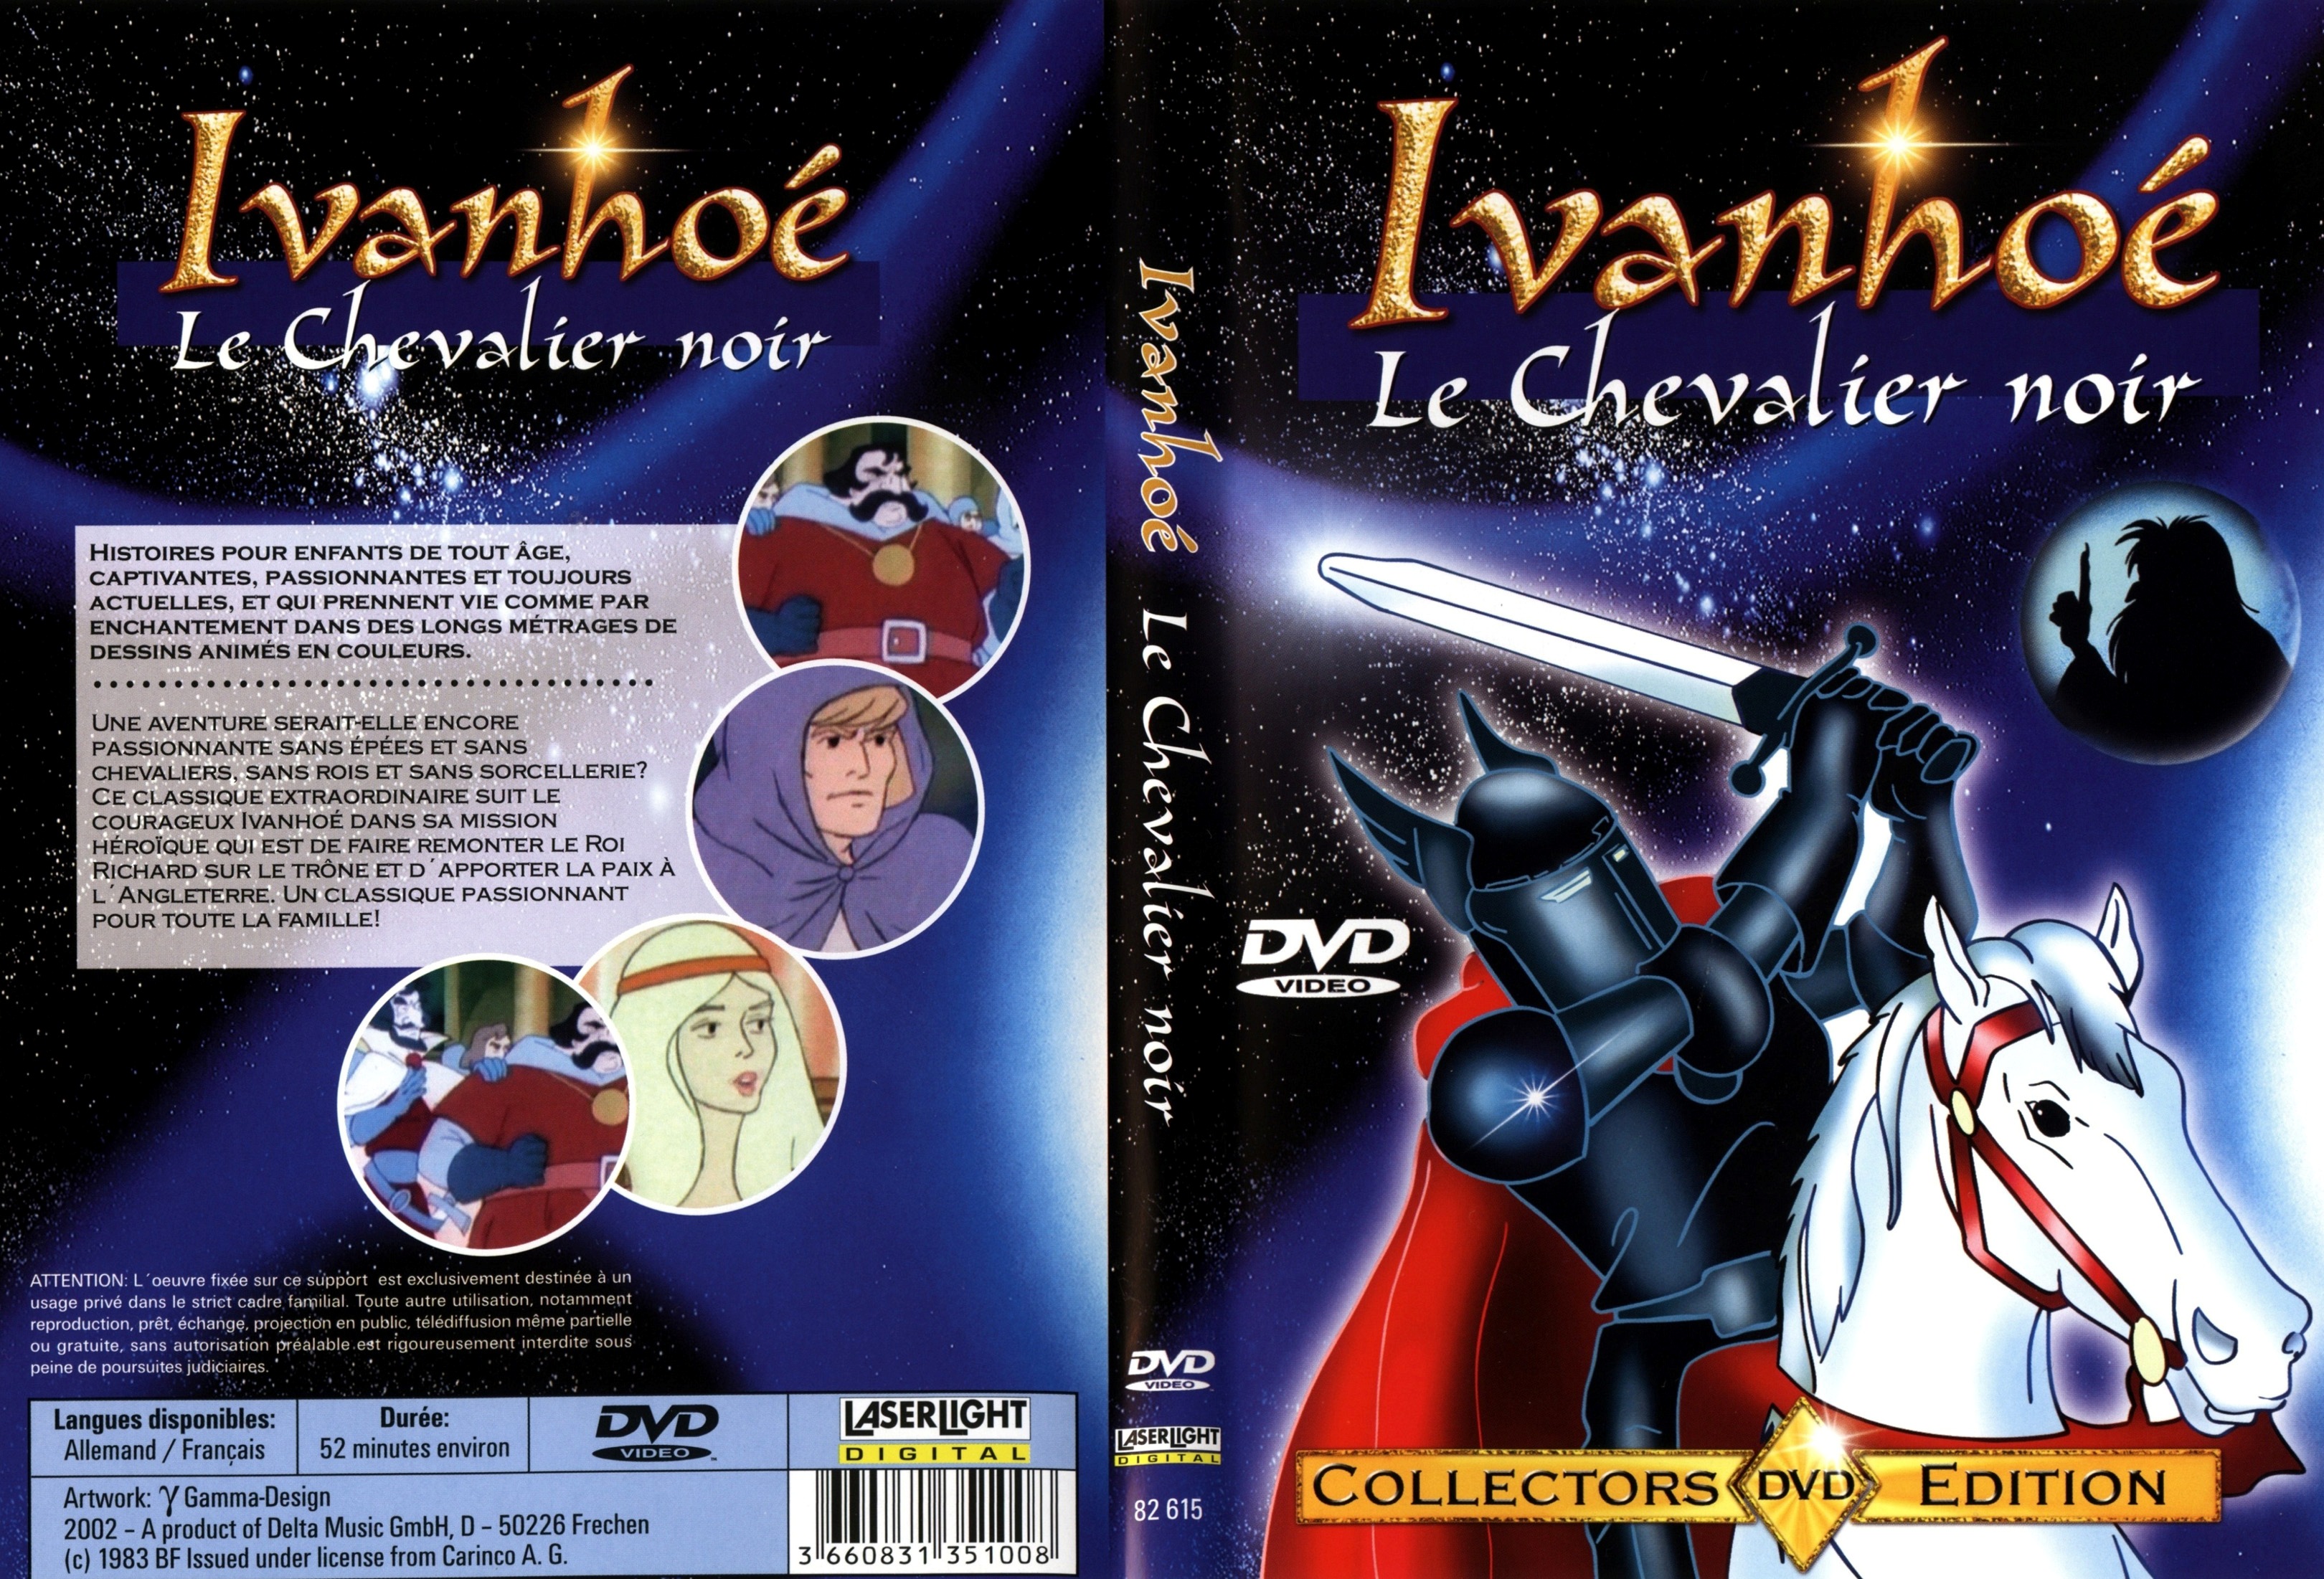 Jaquette DVD Ivanho le chevalier noir (DA)